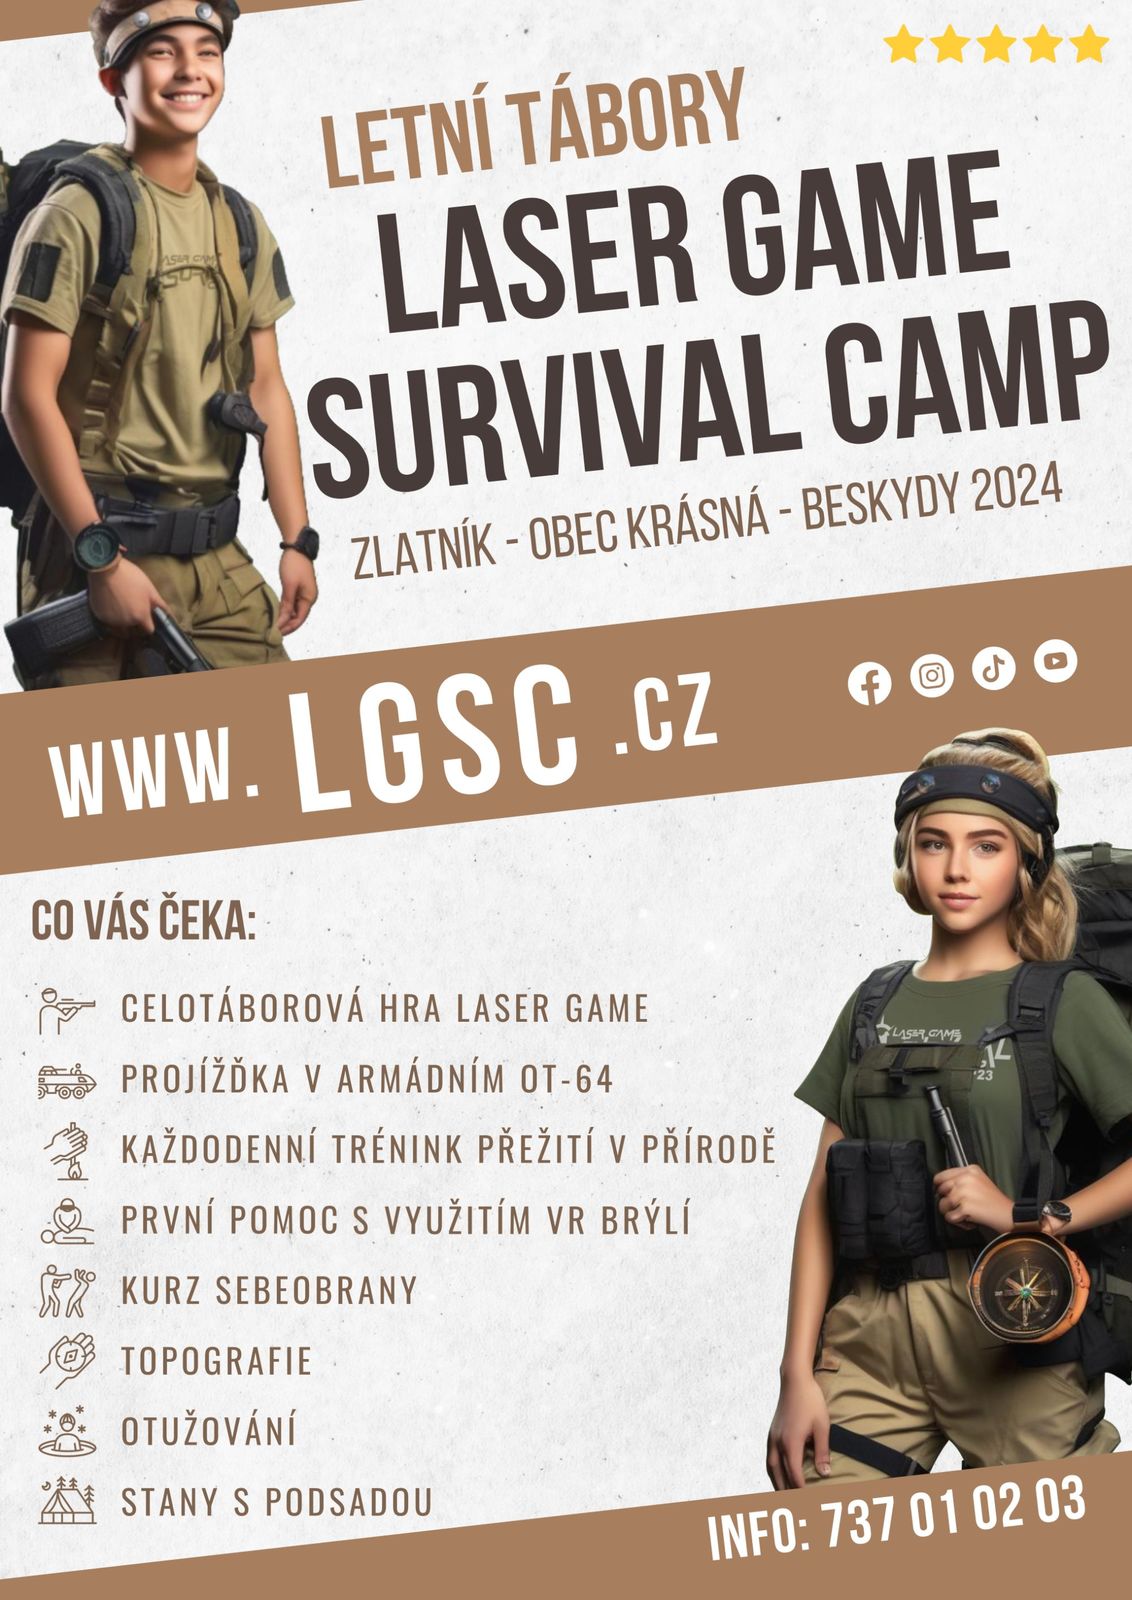 Letní tábory "Laser game survival camp" - Zlatník, obec Krásná, Beskydy 2024